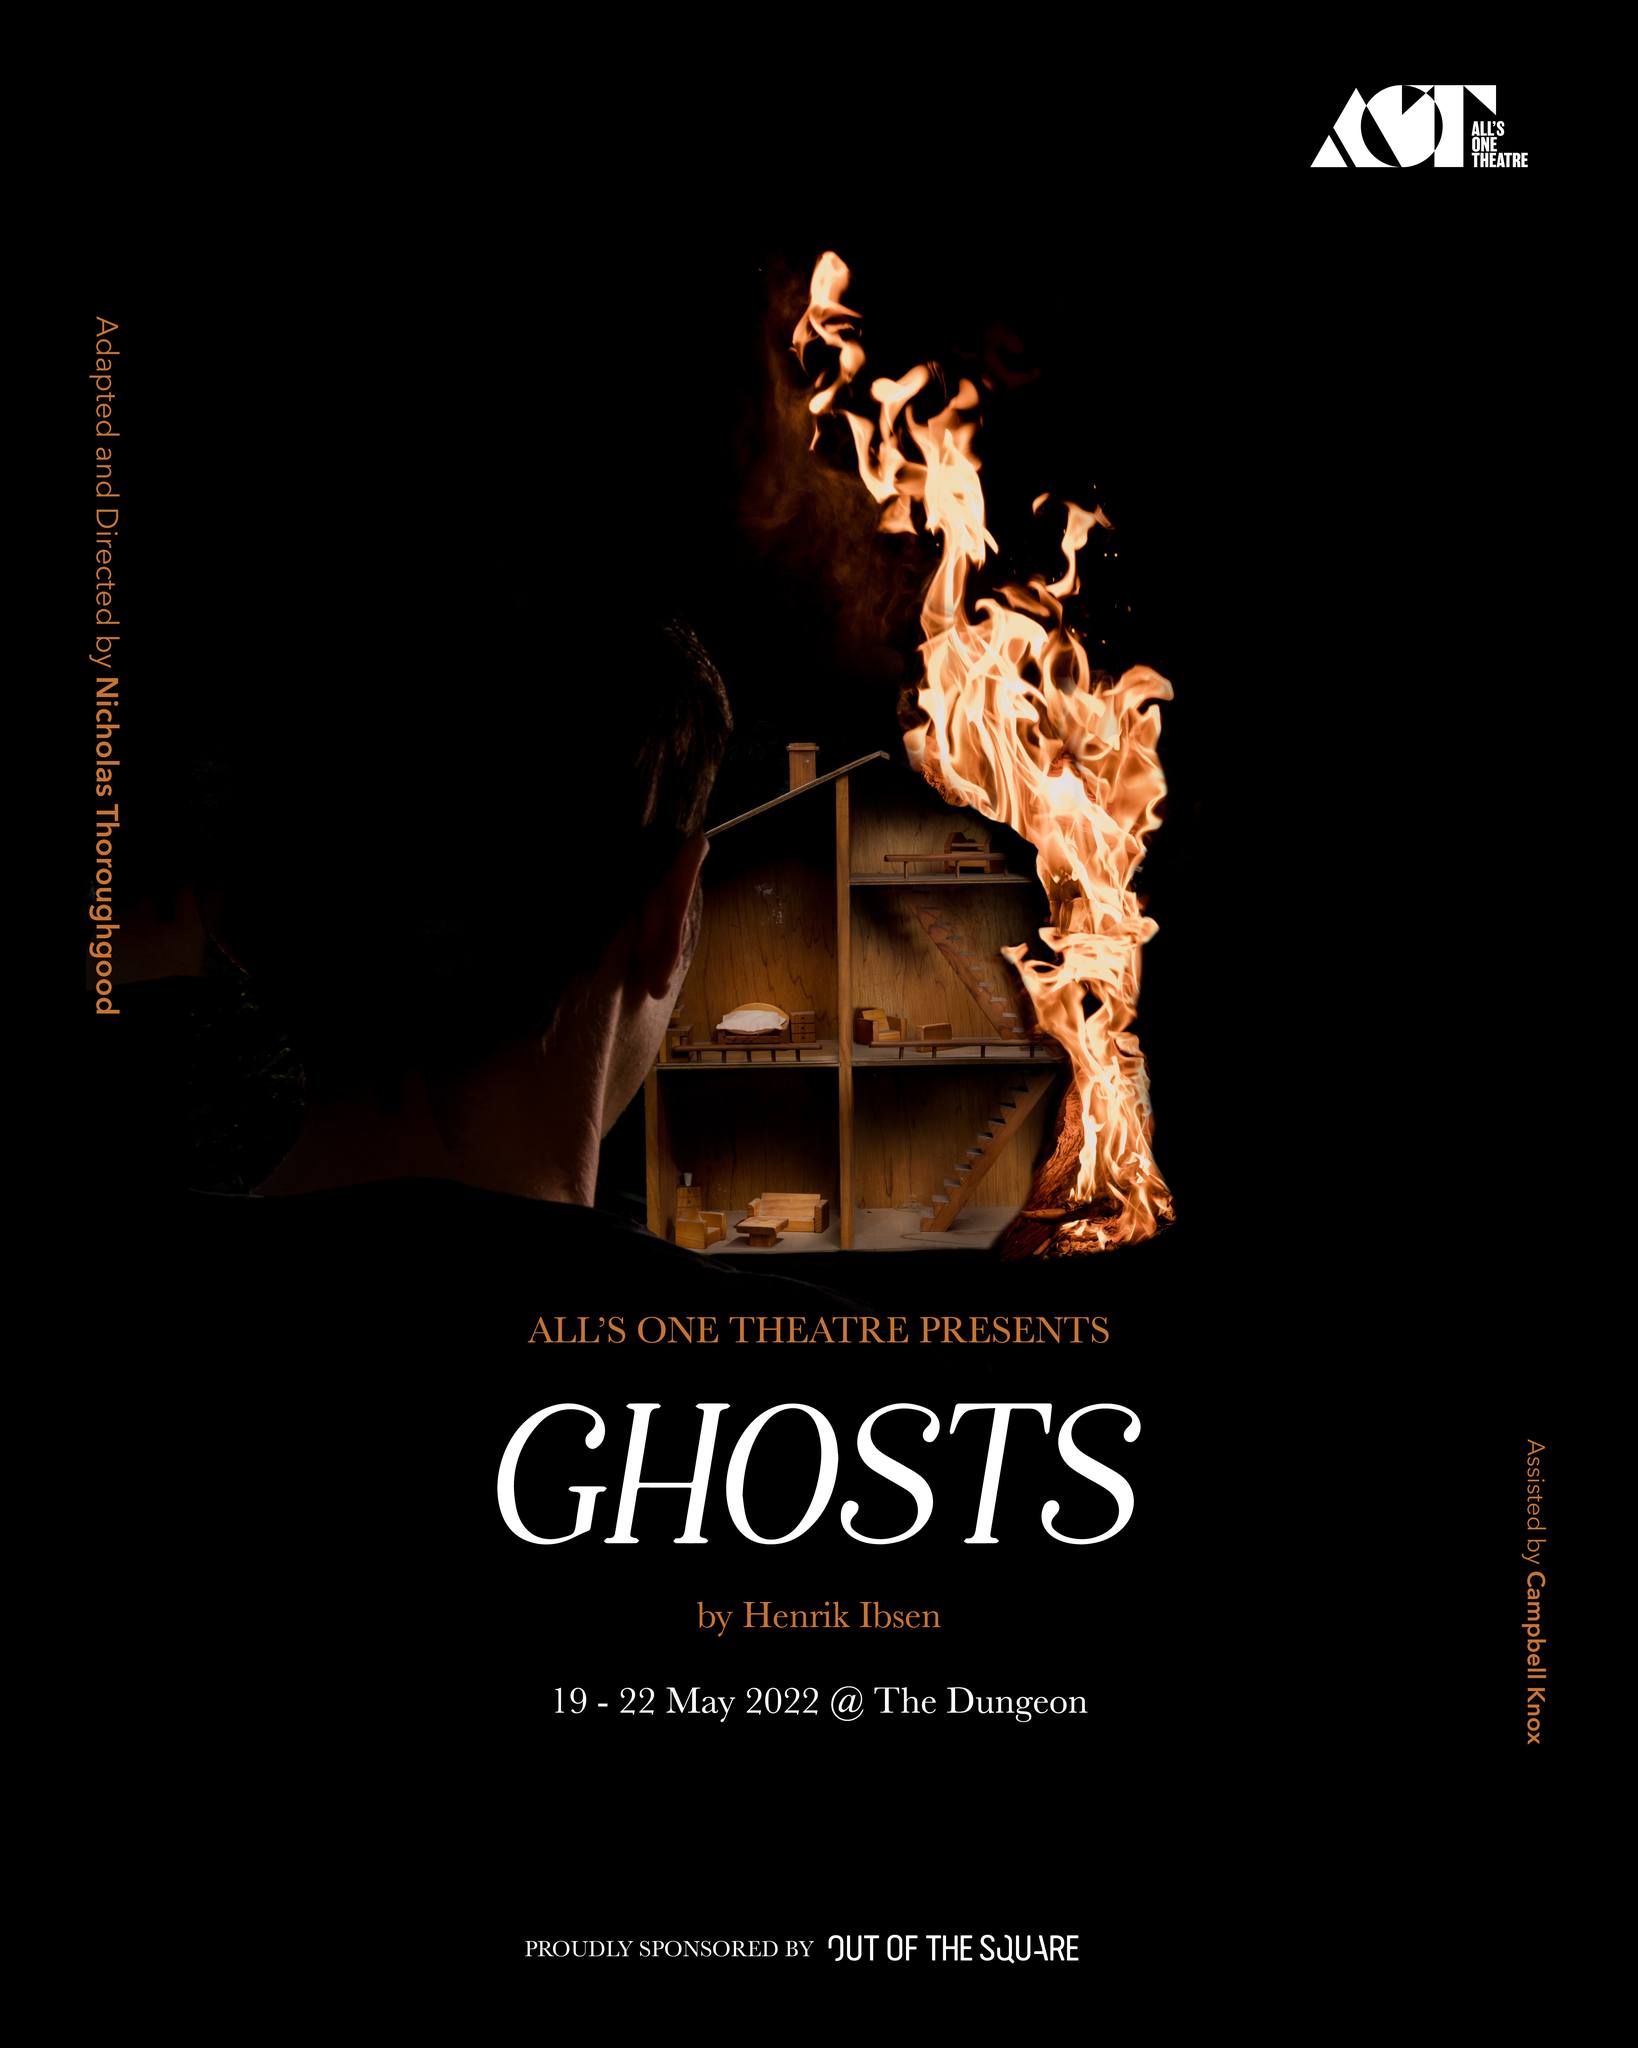 ghosts by henrik ibsen